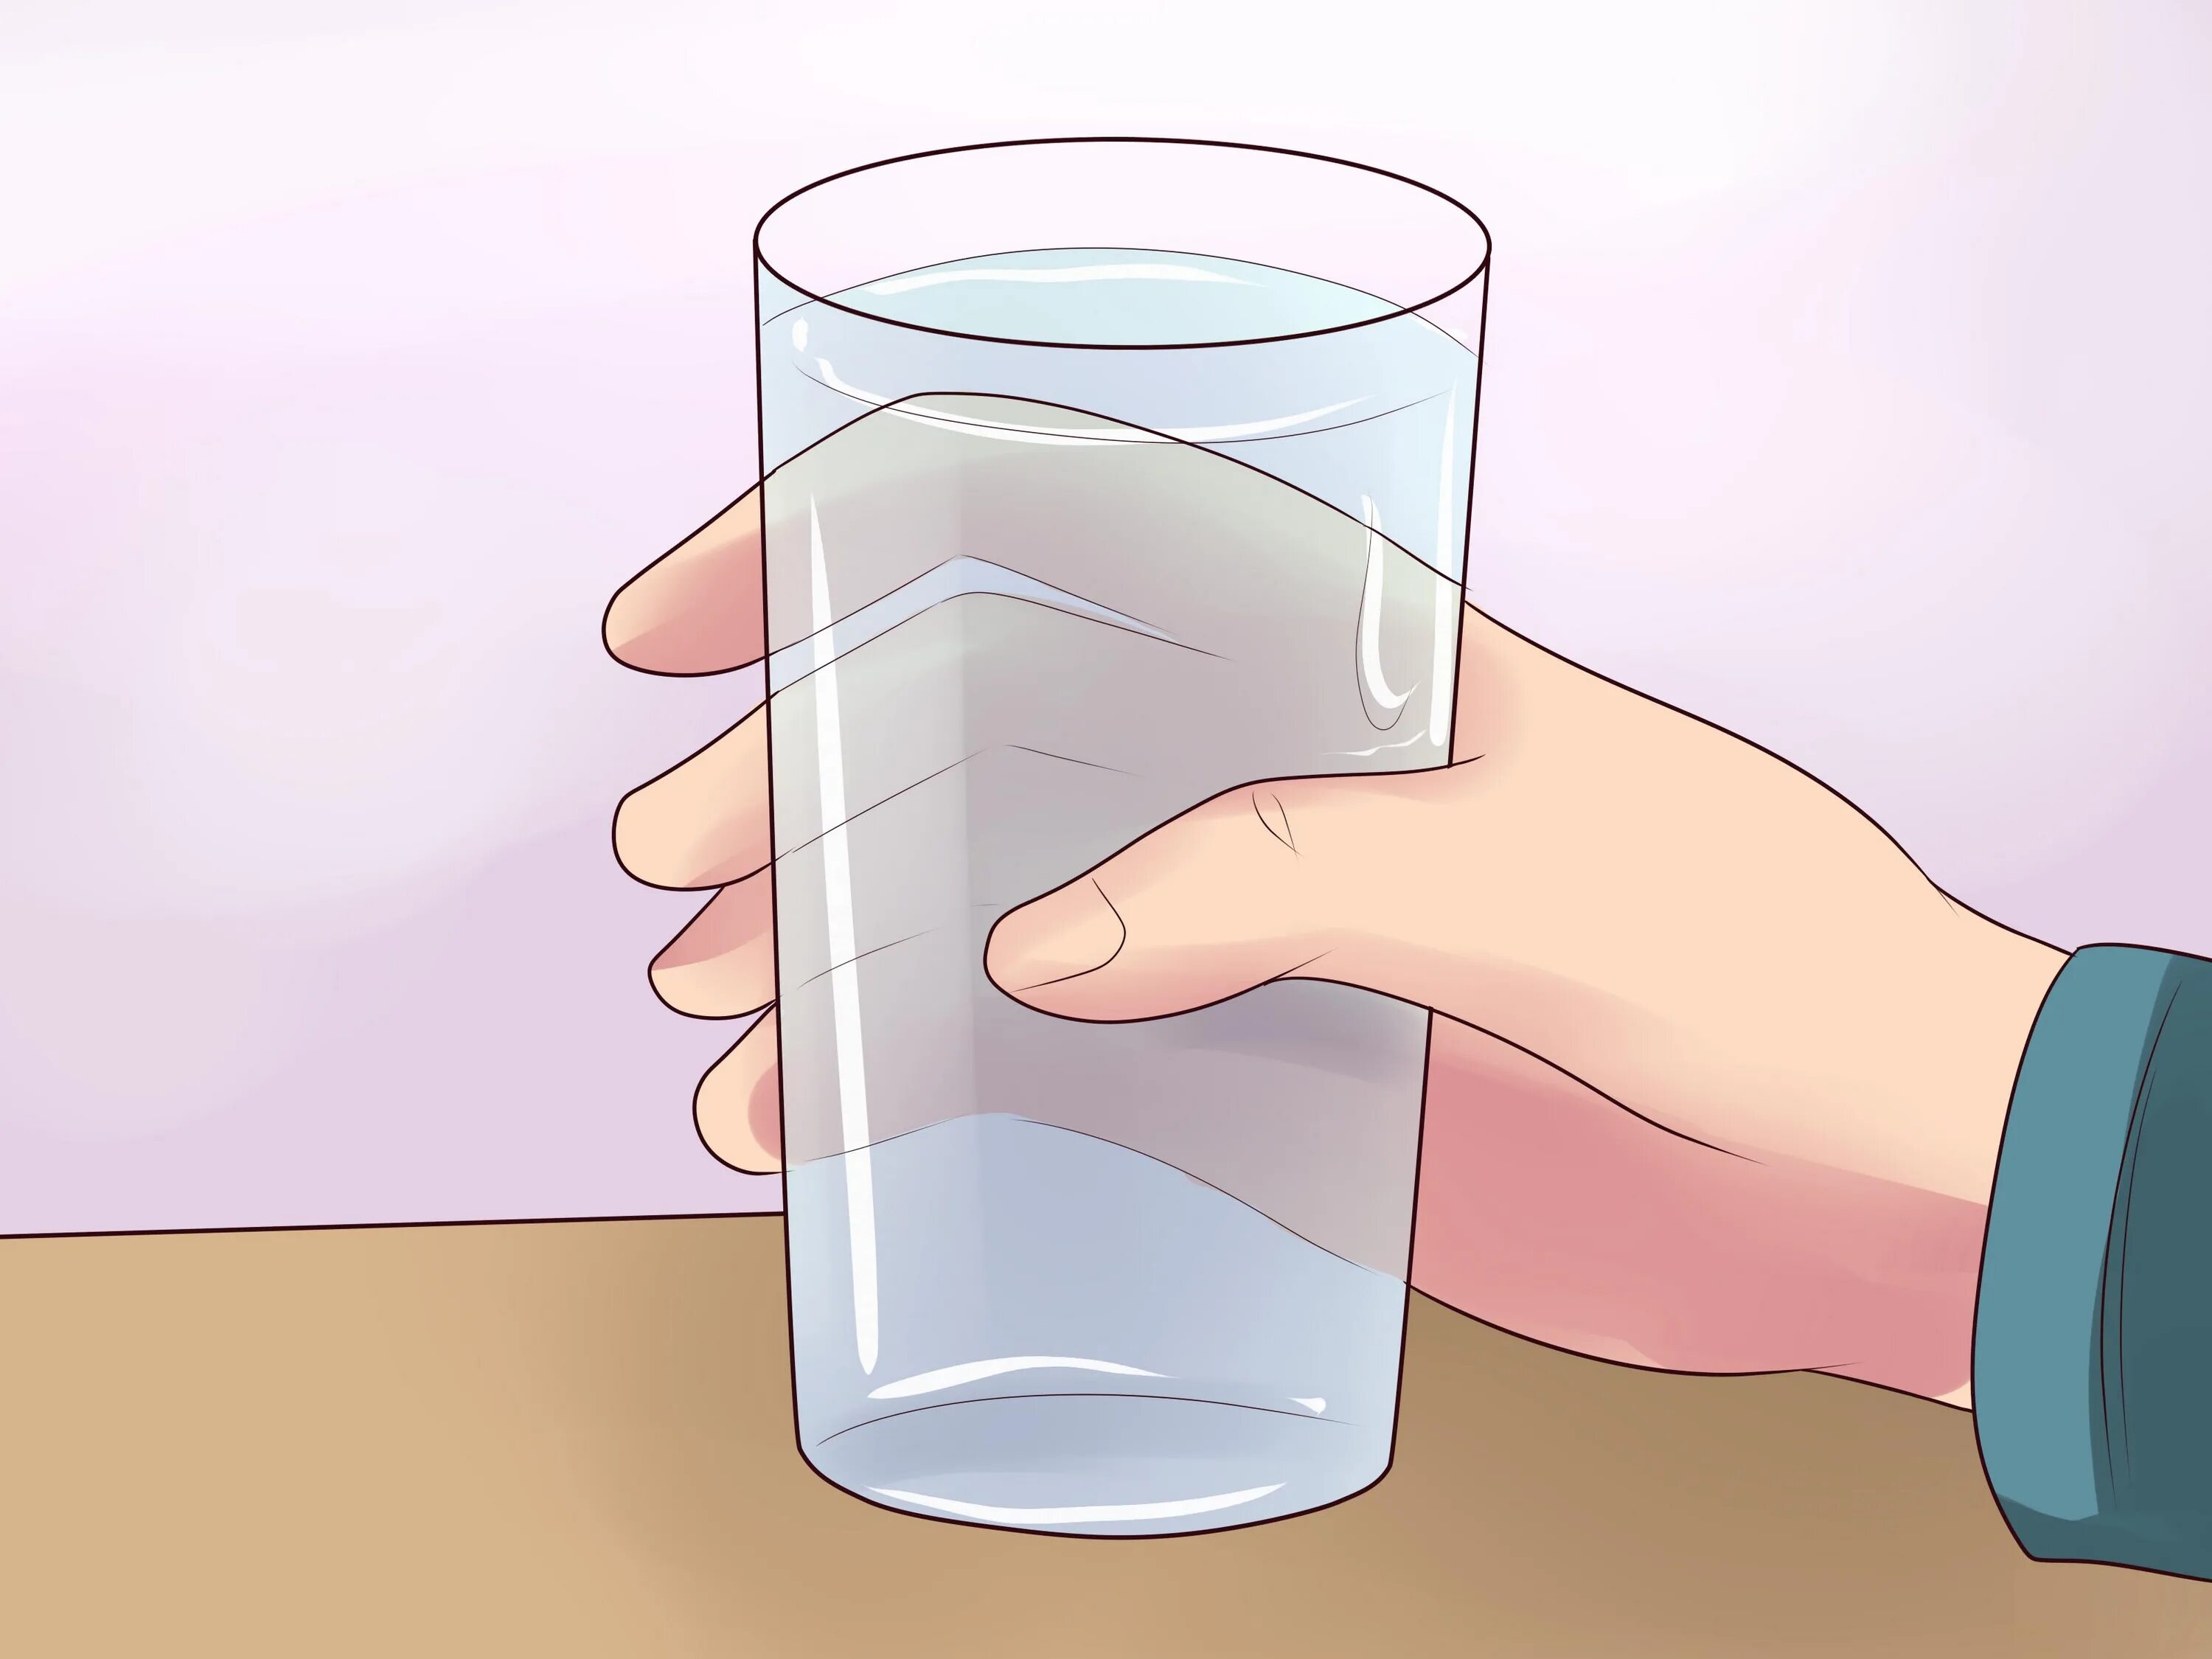 Налейте в стакан воды закройте листом. Стакан воды. Стакан воды в руке. Опрокинутый стакан с водой. Переливание воды из стакана в стакан.